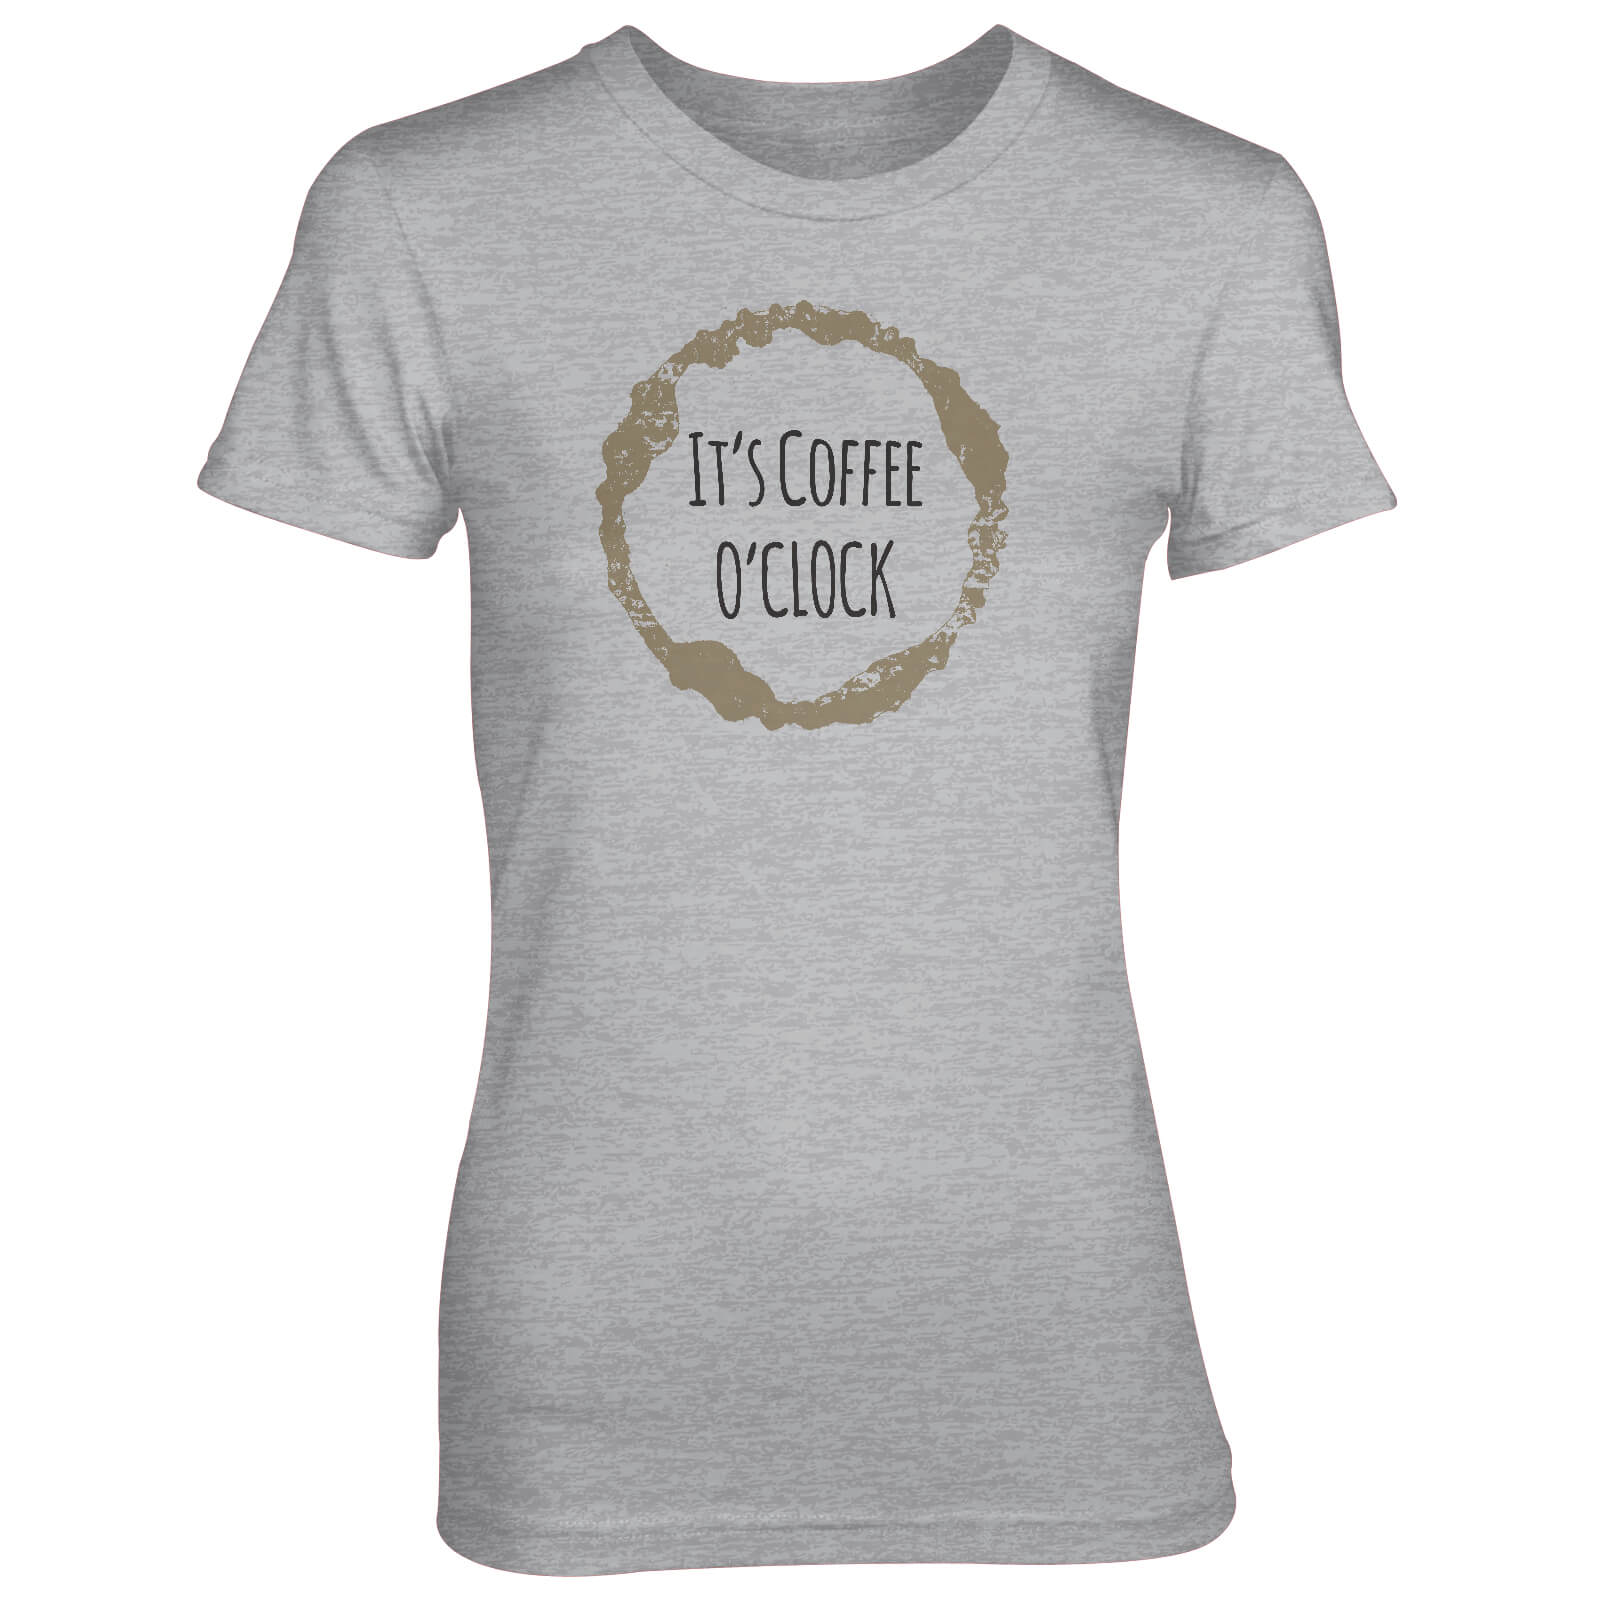 It's Coffee O'Clock Women's Grey T-Shirt - S - Grey